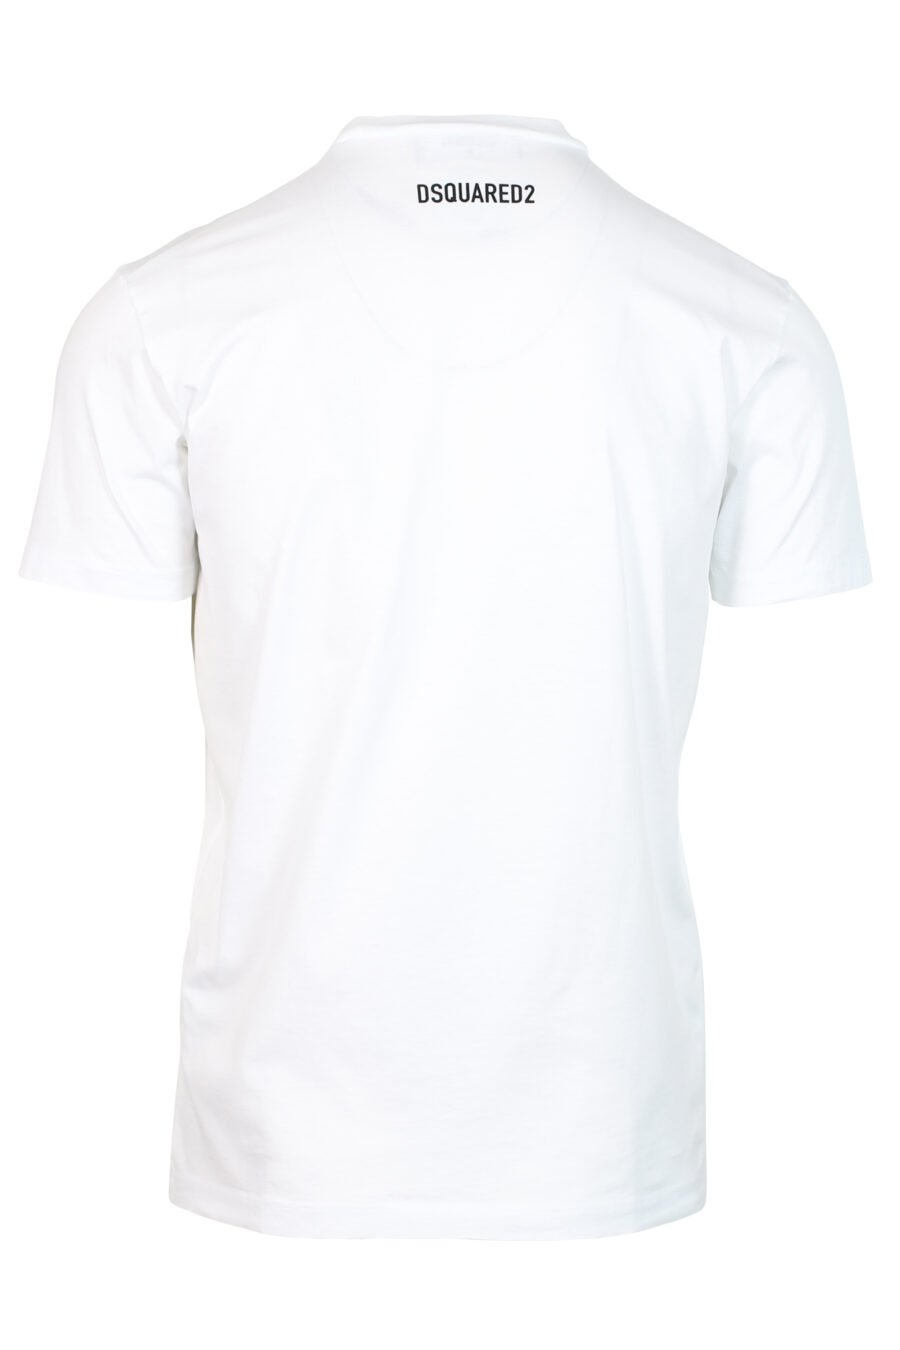 Weißes T-Shirt mit Hunde-Maxilogo "Gepixelt" - 8052134980705 2